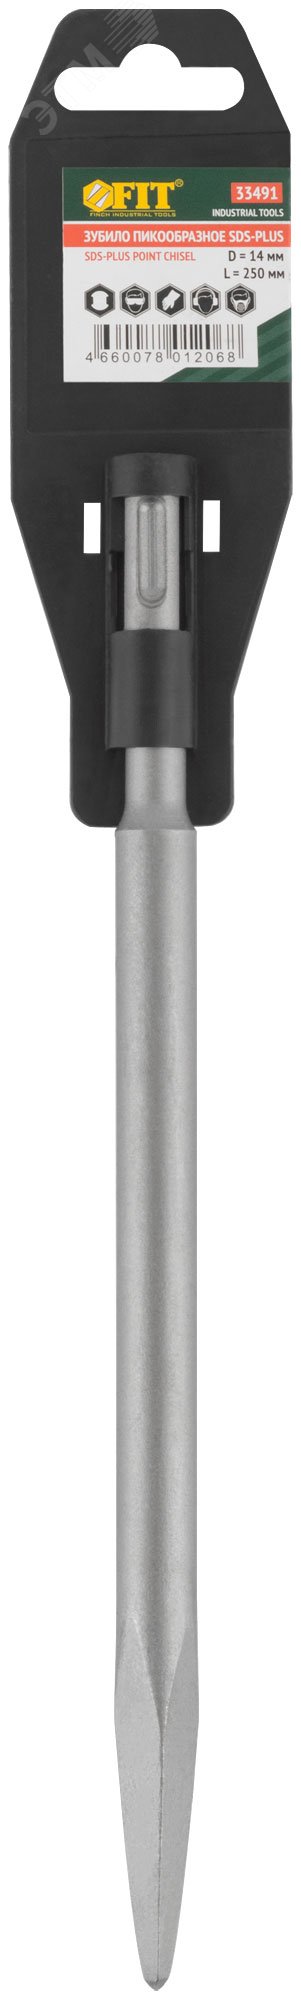 Зубило пикообразное SDS-PLUS, легированная сталь 250х14 мм 33491 FIT - превью 3